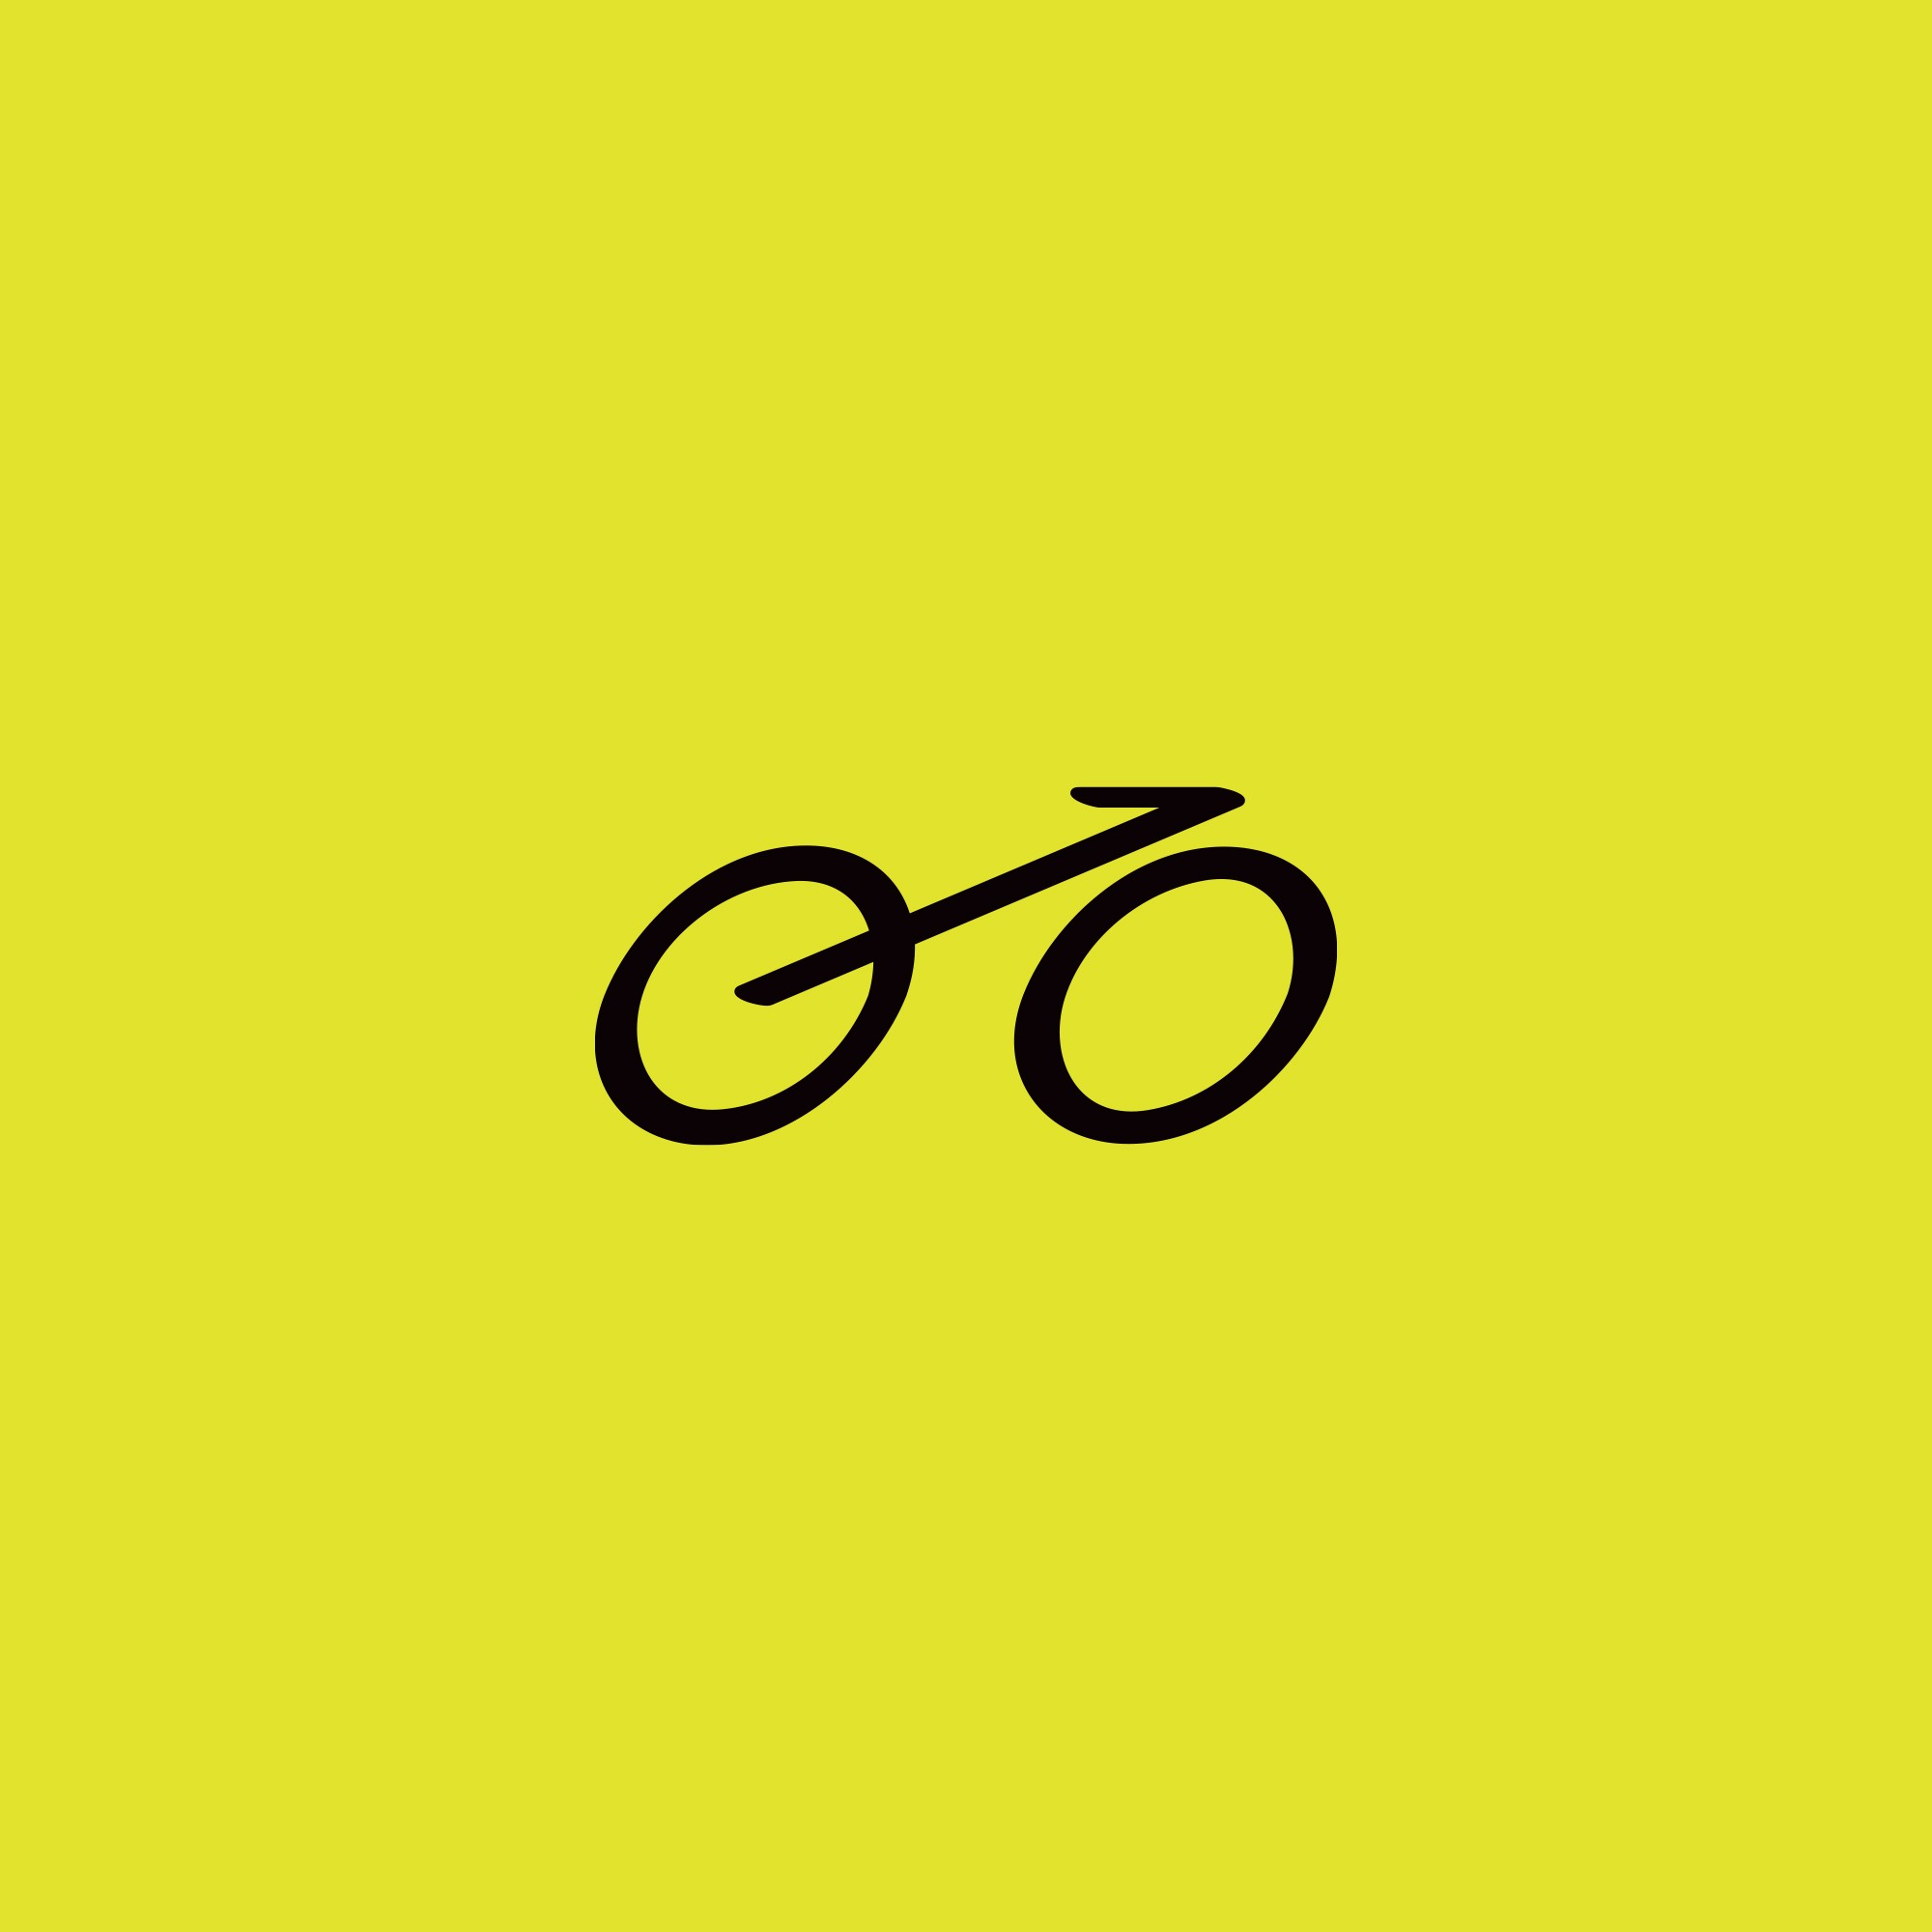 Das Bad Bikes Berlin-Symbol zeigt ein schwarzes Fahrrad auf hellgrünem Hintergrund